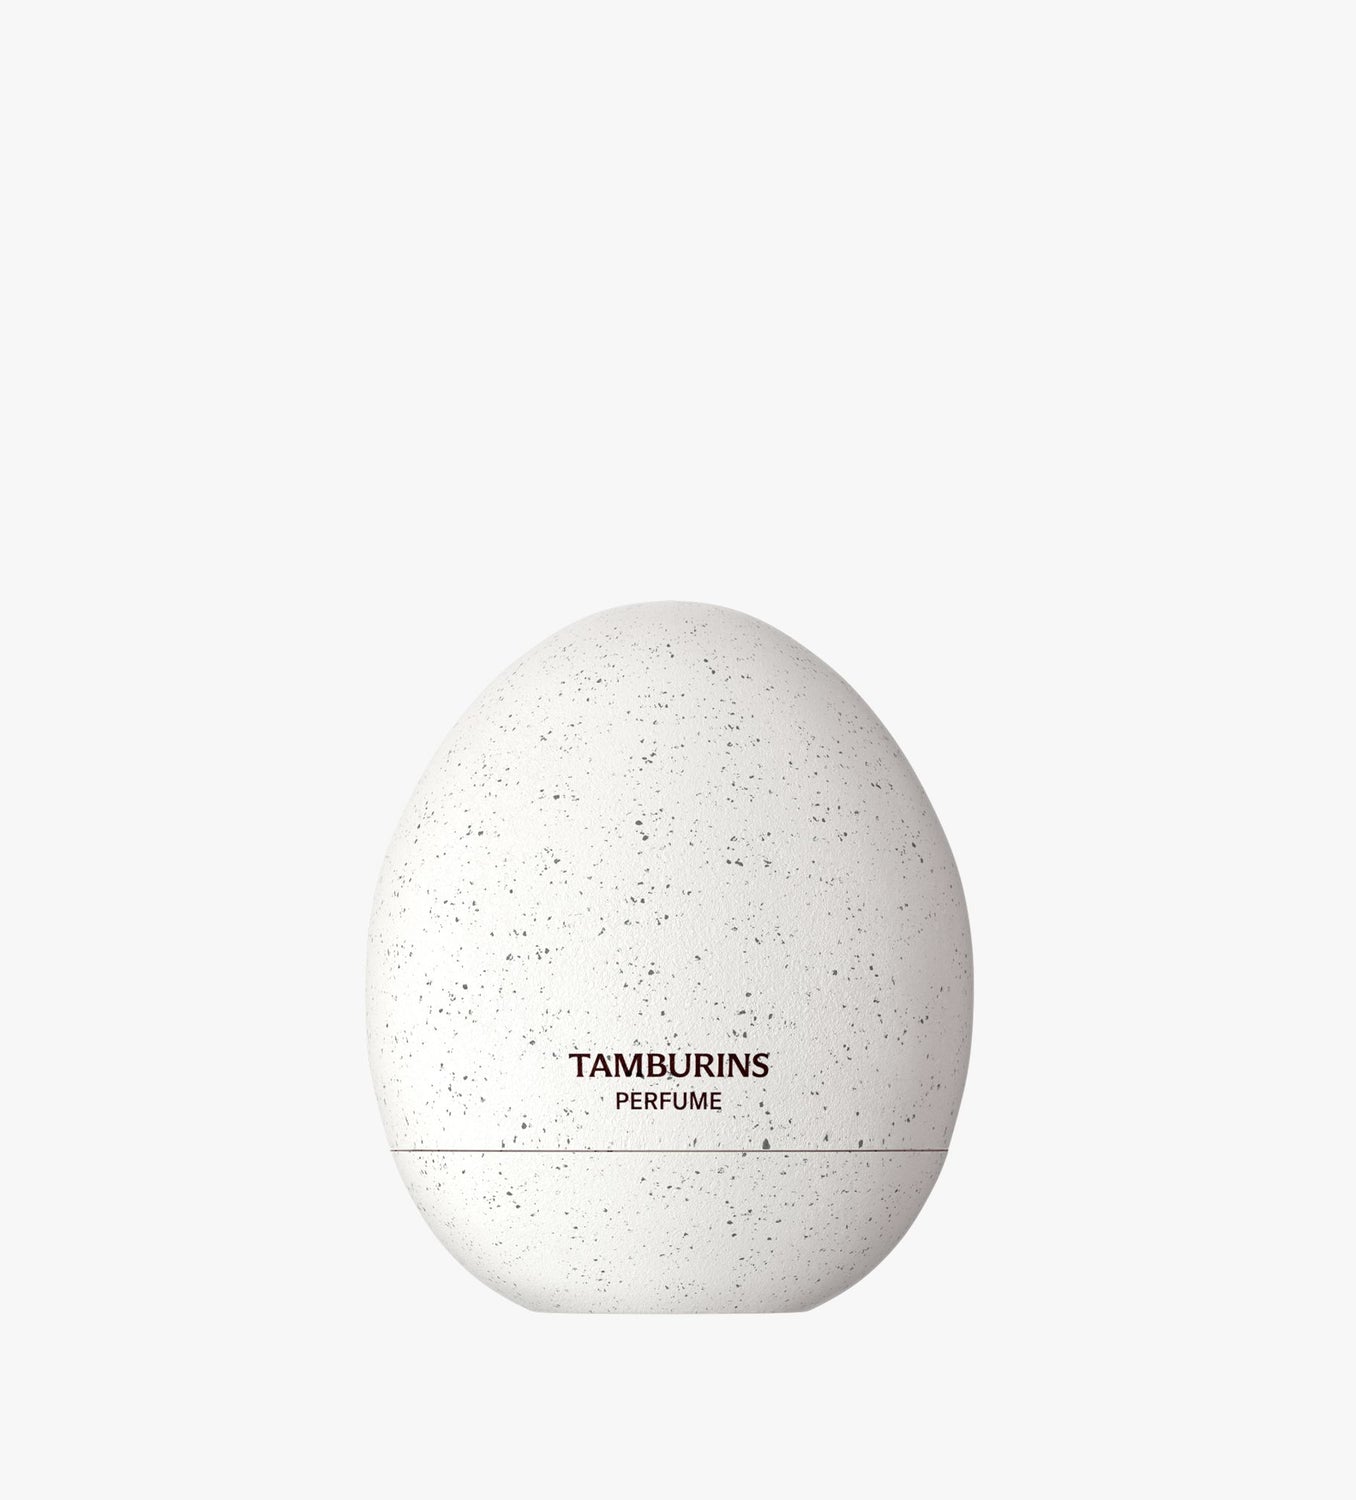 The Egg Perfume PUMKINI